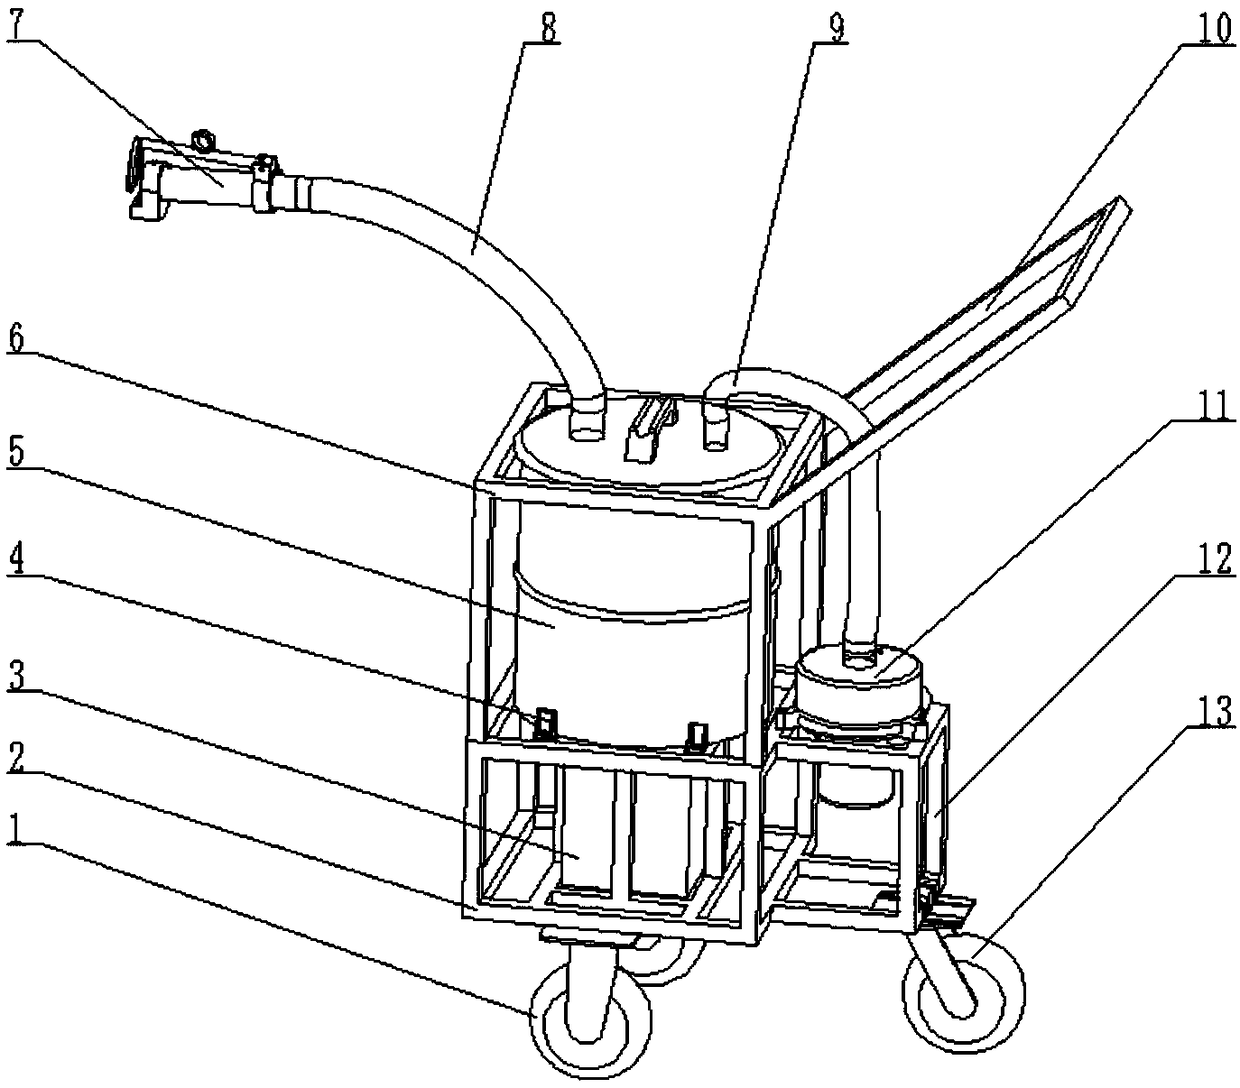 Air suction type kumquat harvesting machine